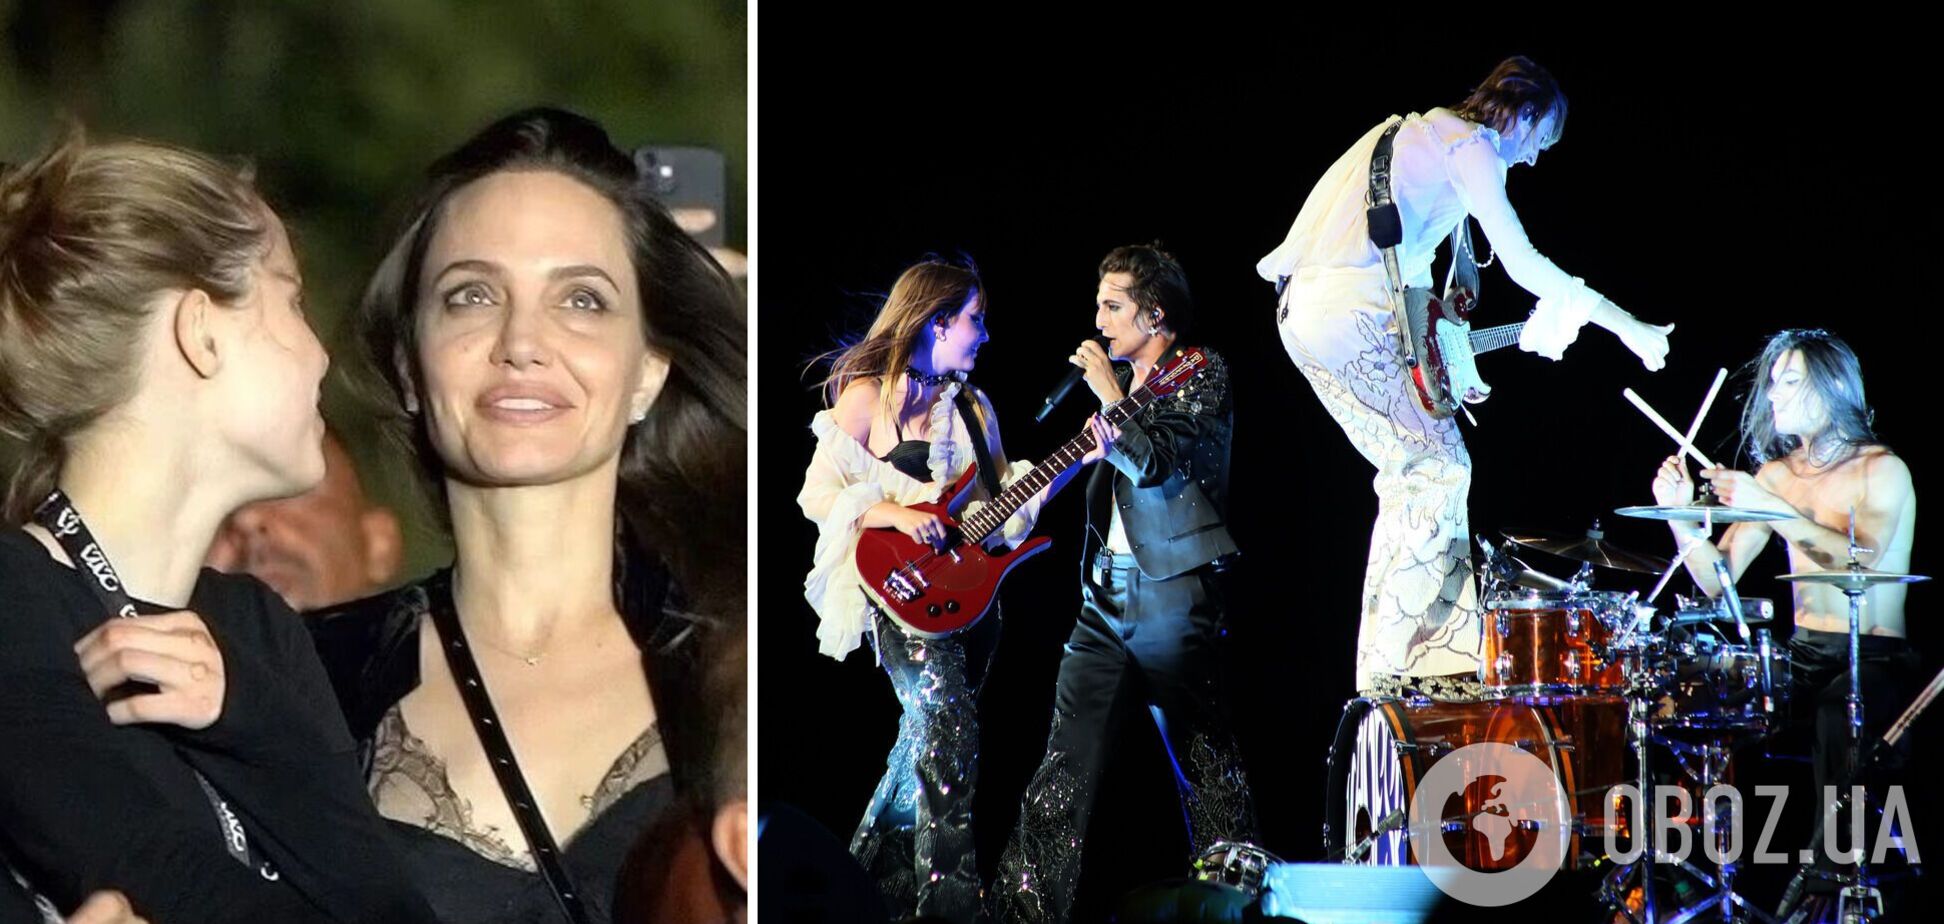 Джолі разом із донькою підспівували Måneskin, який послав Путіна на концерті в Римі. Відео